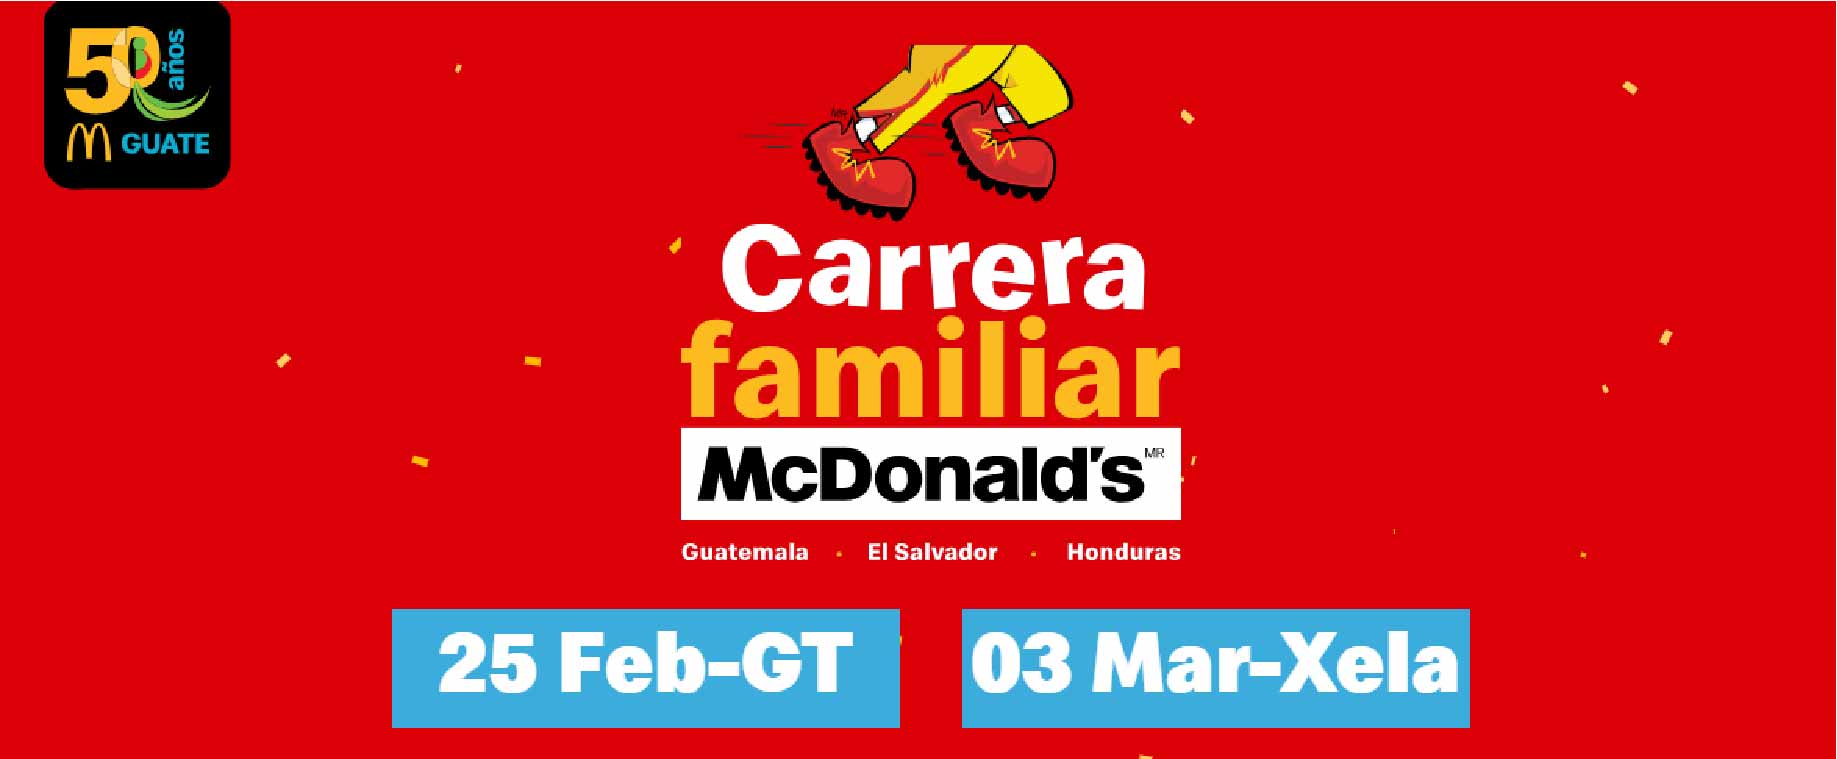 Carrera Familiar McDonald's Quetzaltenango